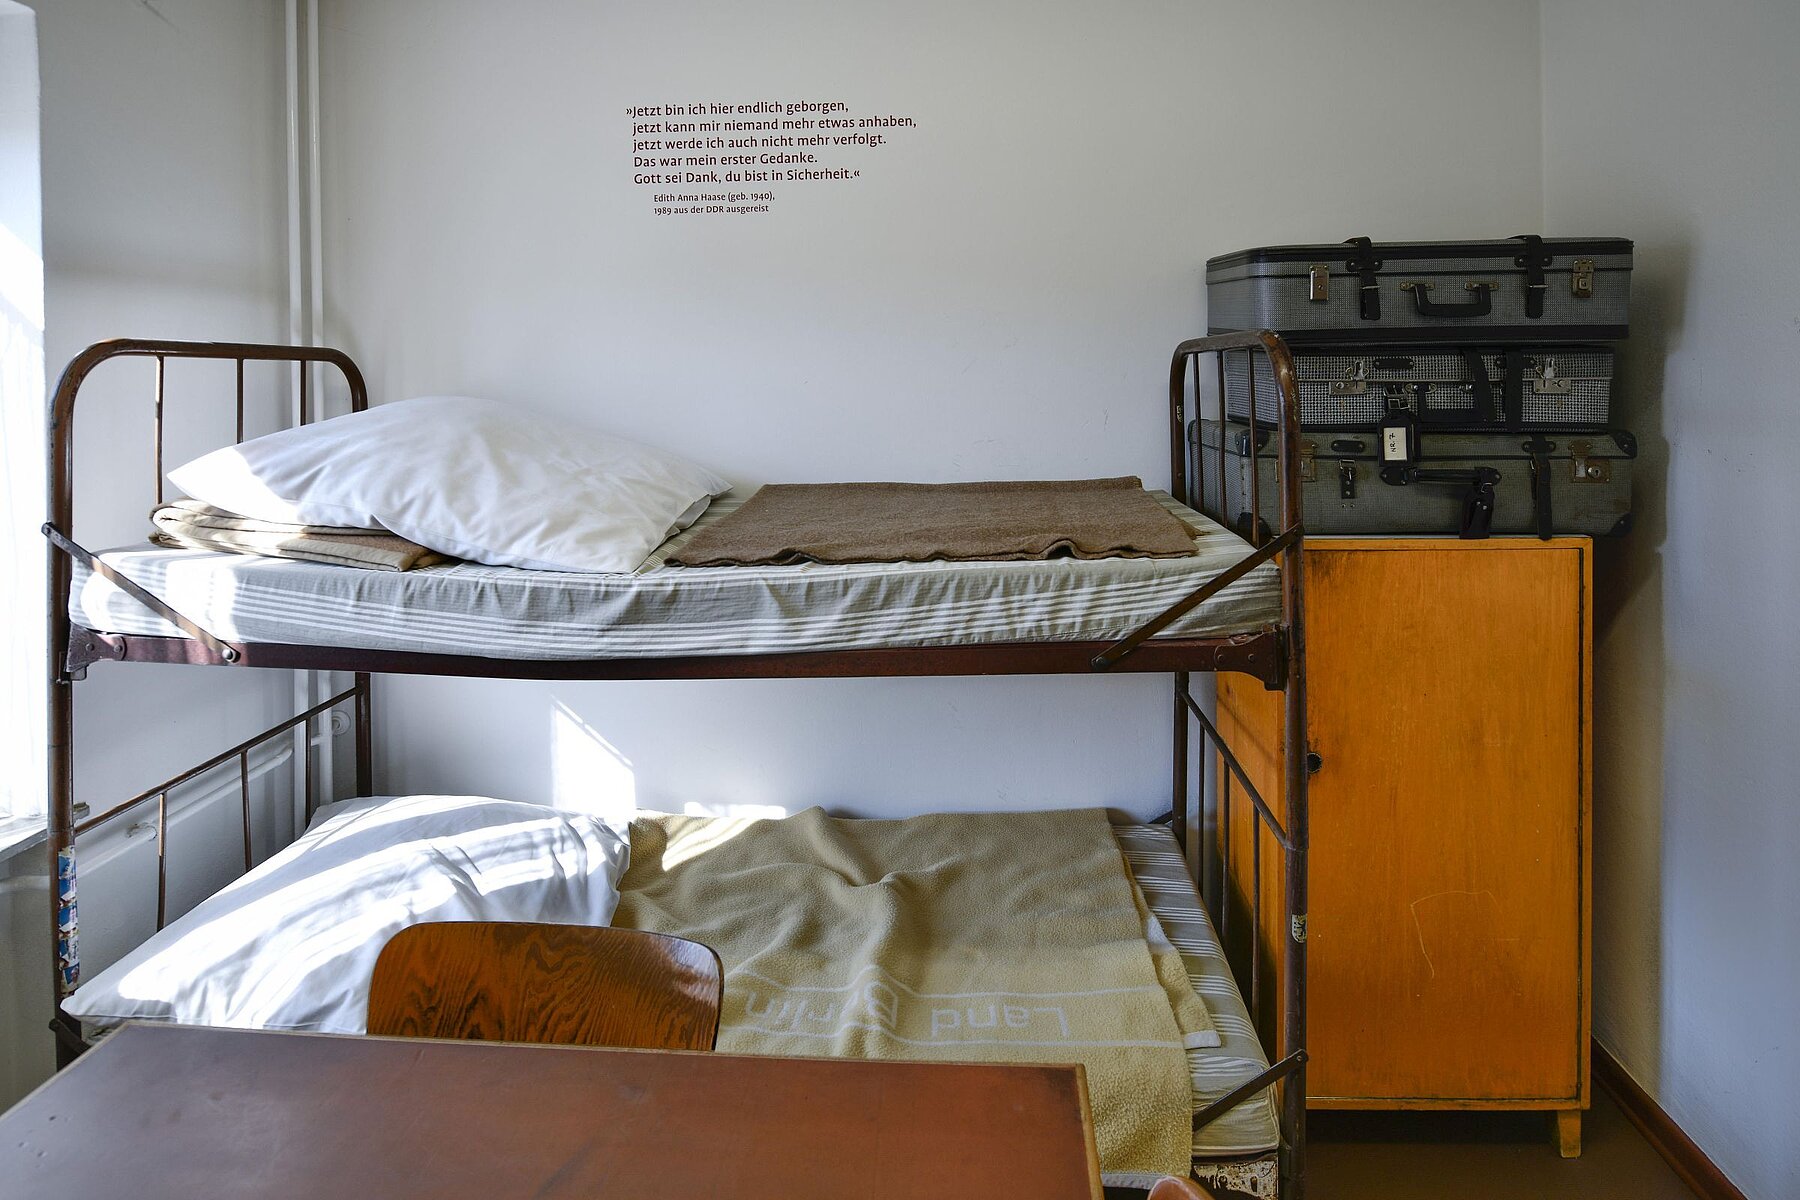 In einem Zimmer steht ein Doppelstockbett und rechts davon ein Schrank aus holz, auf dem drei Koffer liegen.